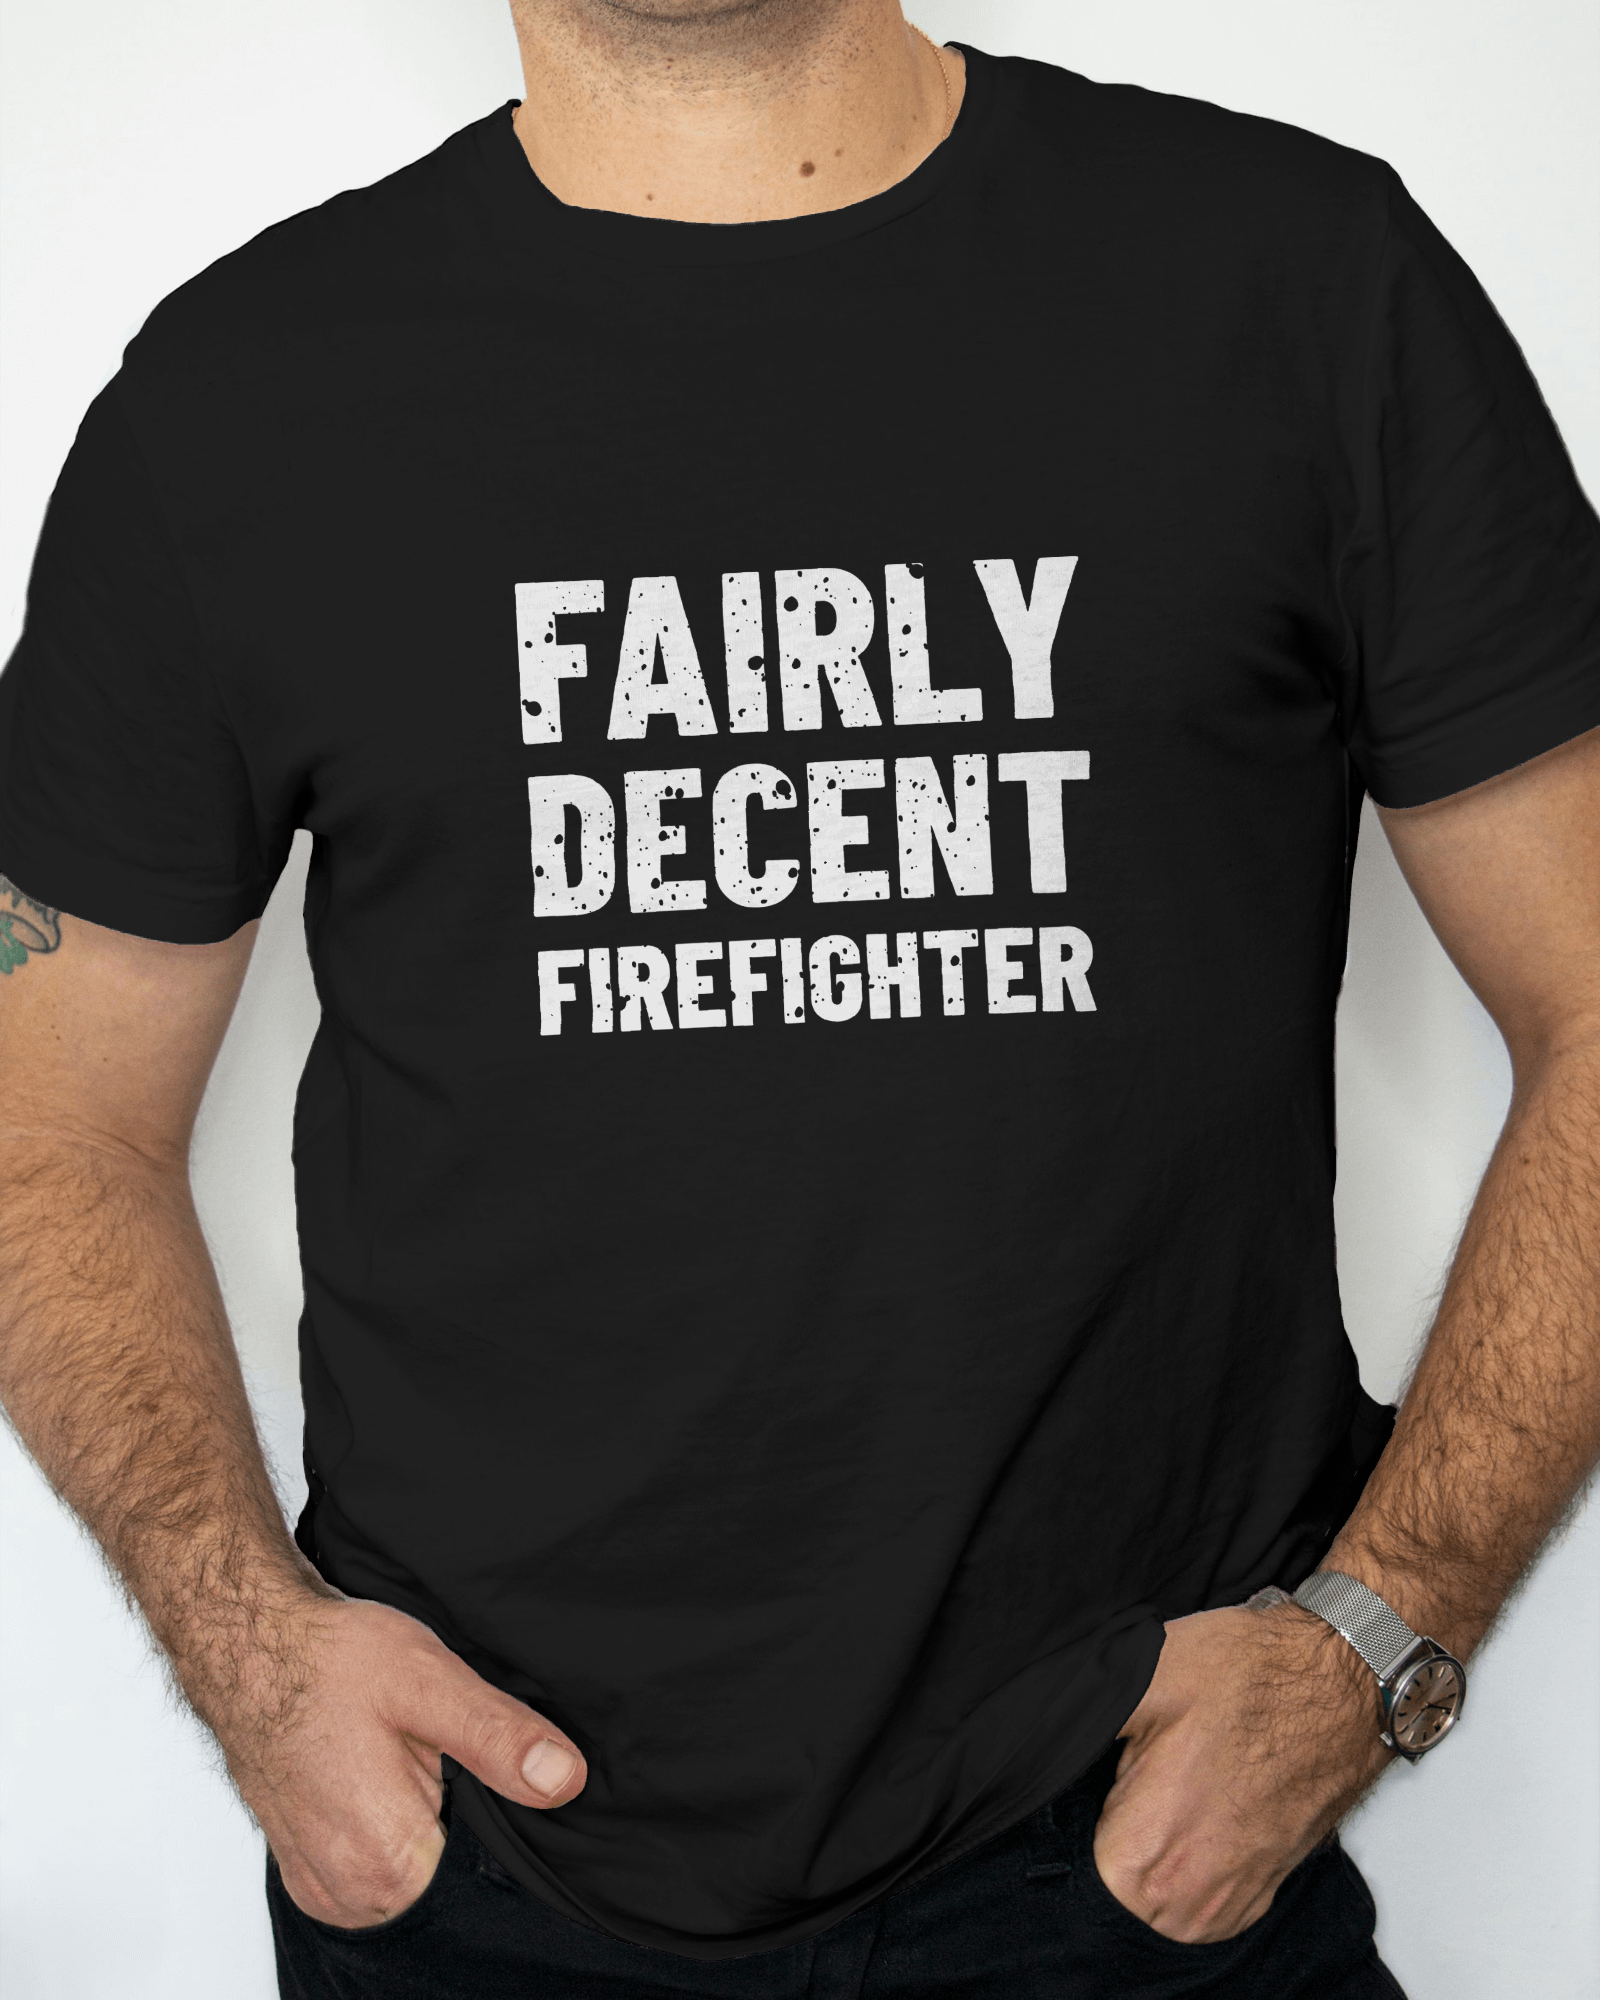 firefighter shirt for men